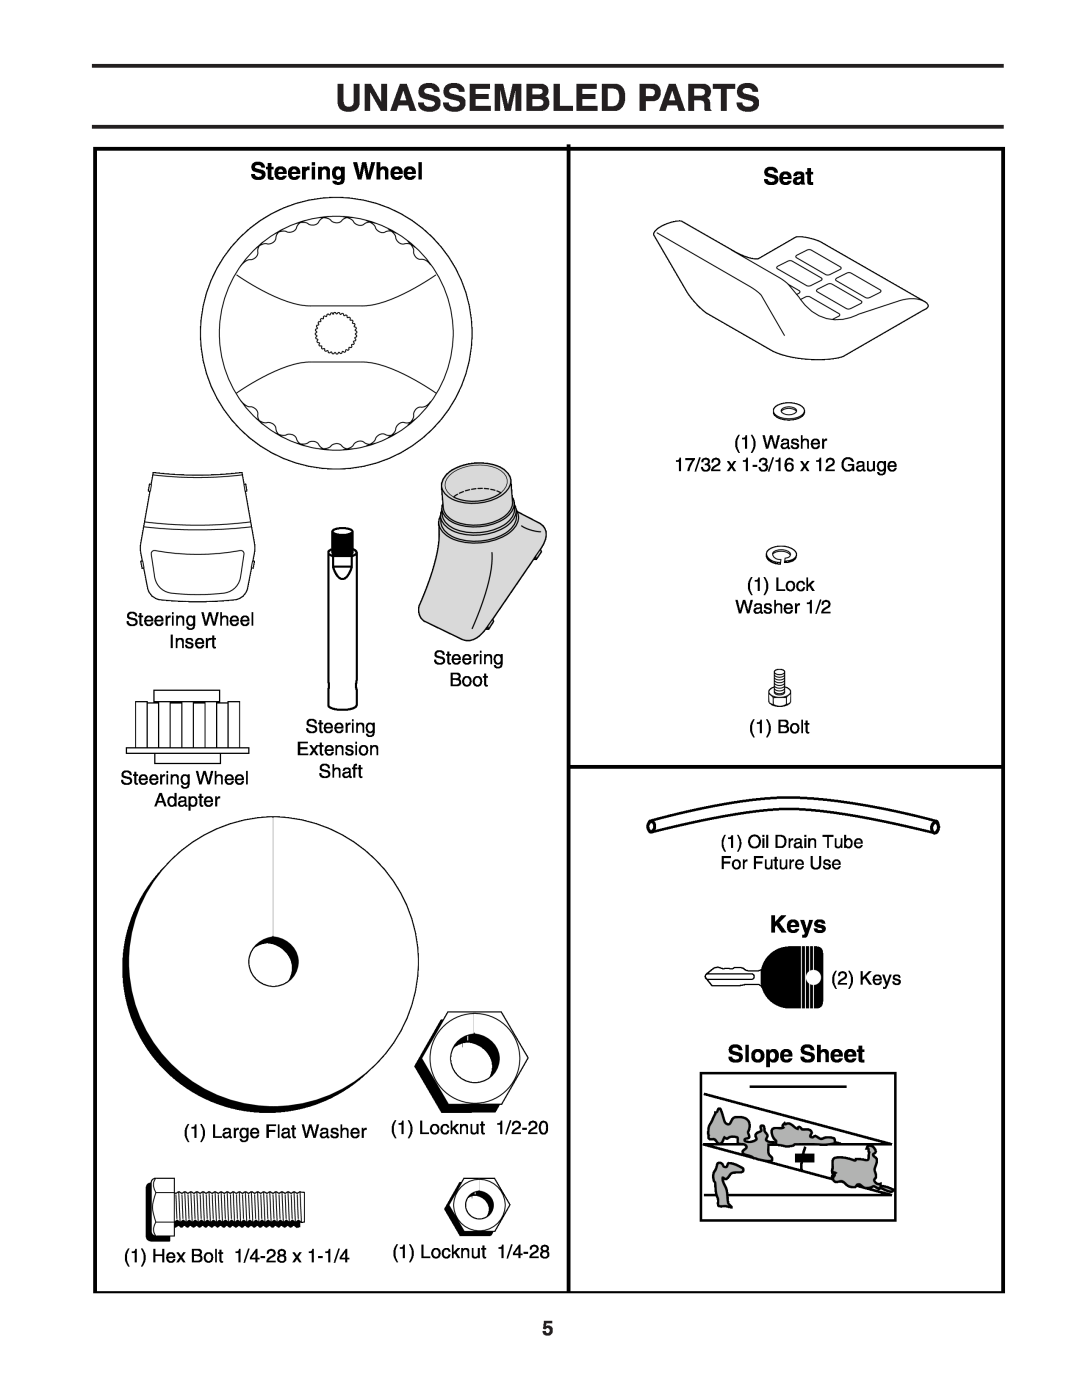 Poulan 183981 manual Unassembled Parts, Steering Wheel, Seat, Keys, Slope Sheet 